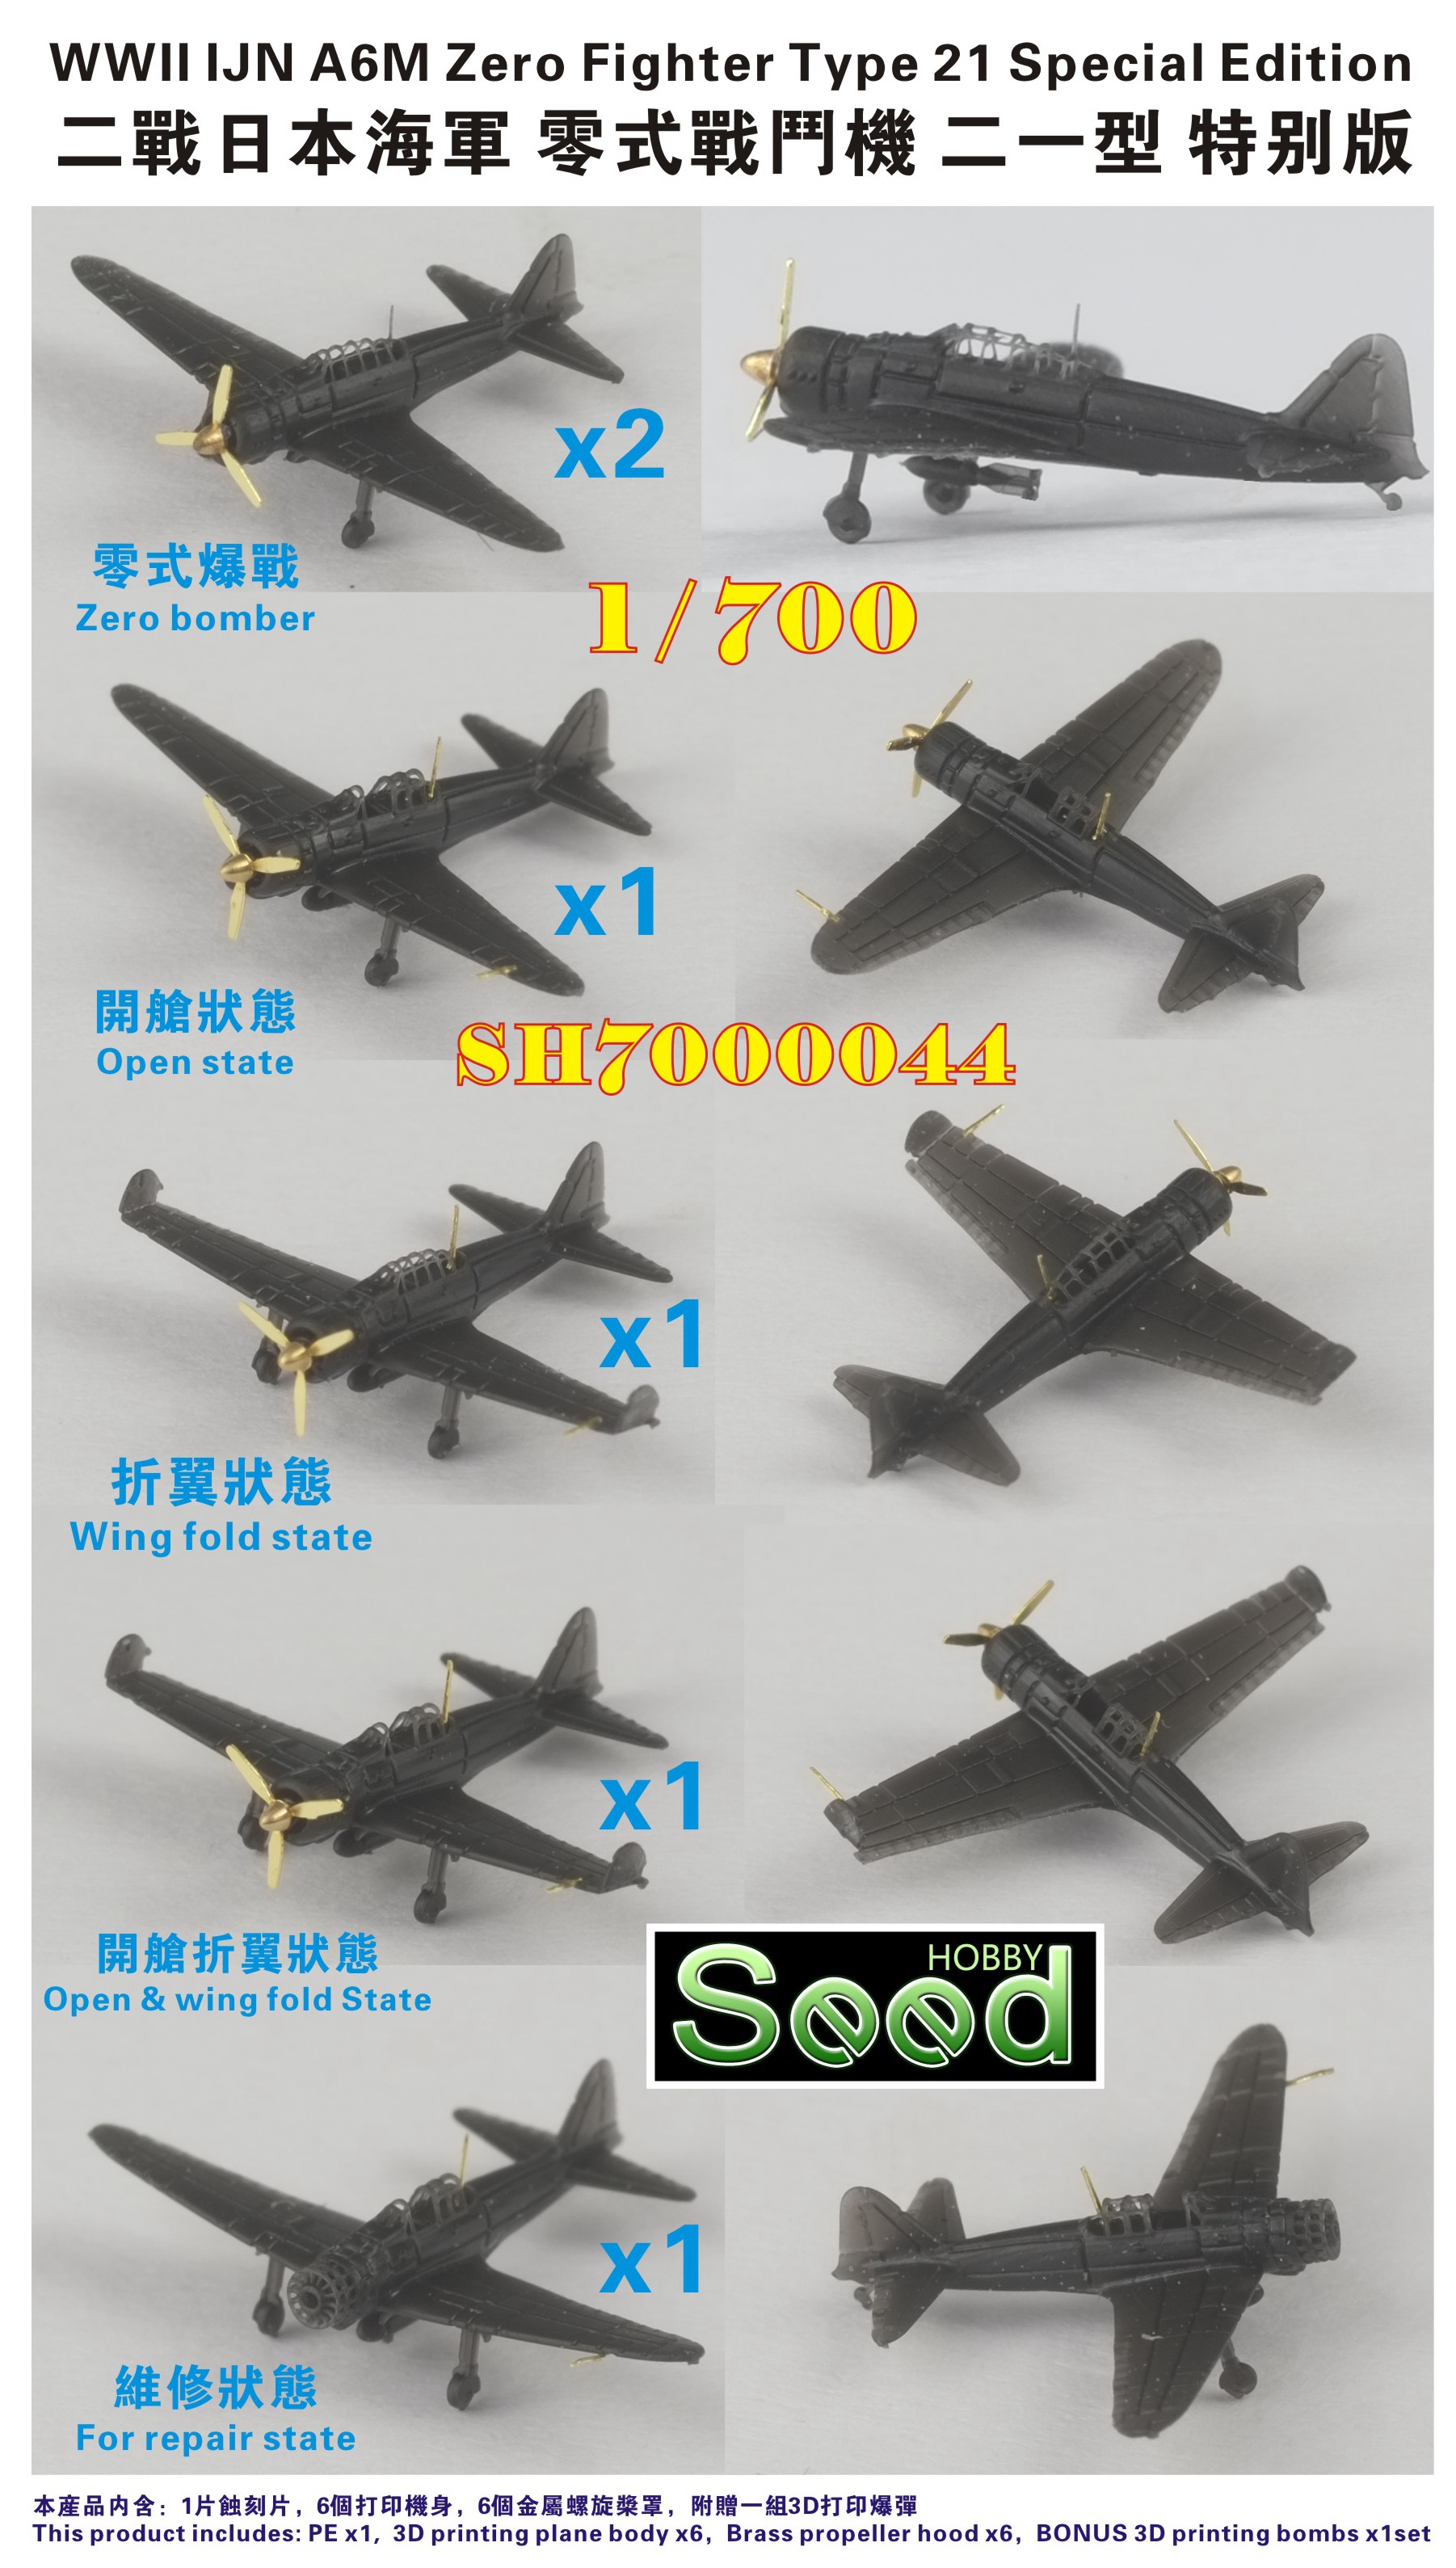 1/700 二战日本海军零式战斗机二一型初期型特别版(6架)3D打印产品 - 点击图像关闭